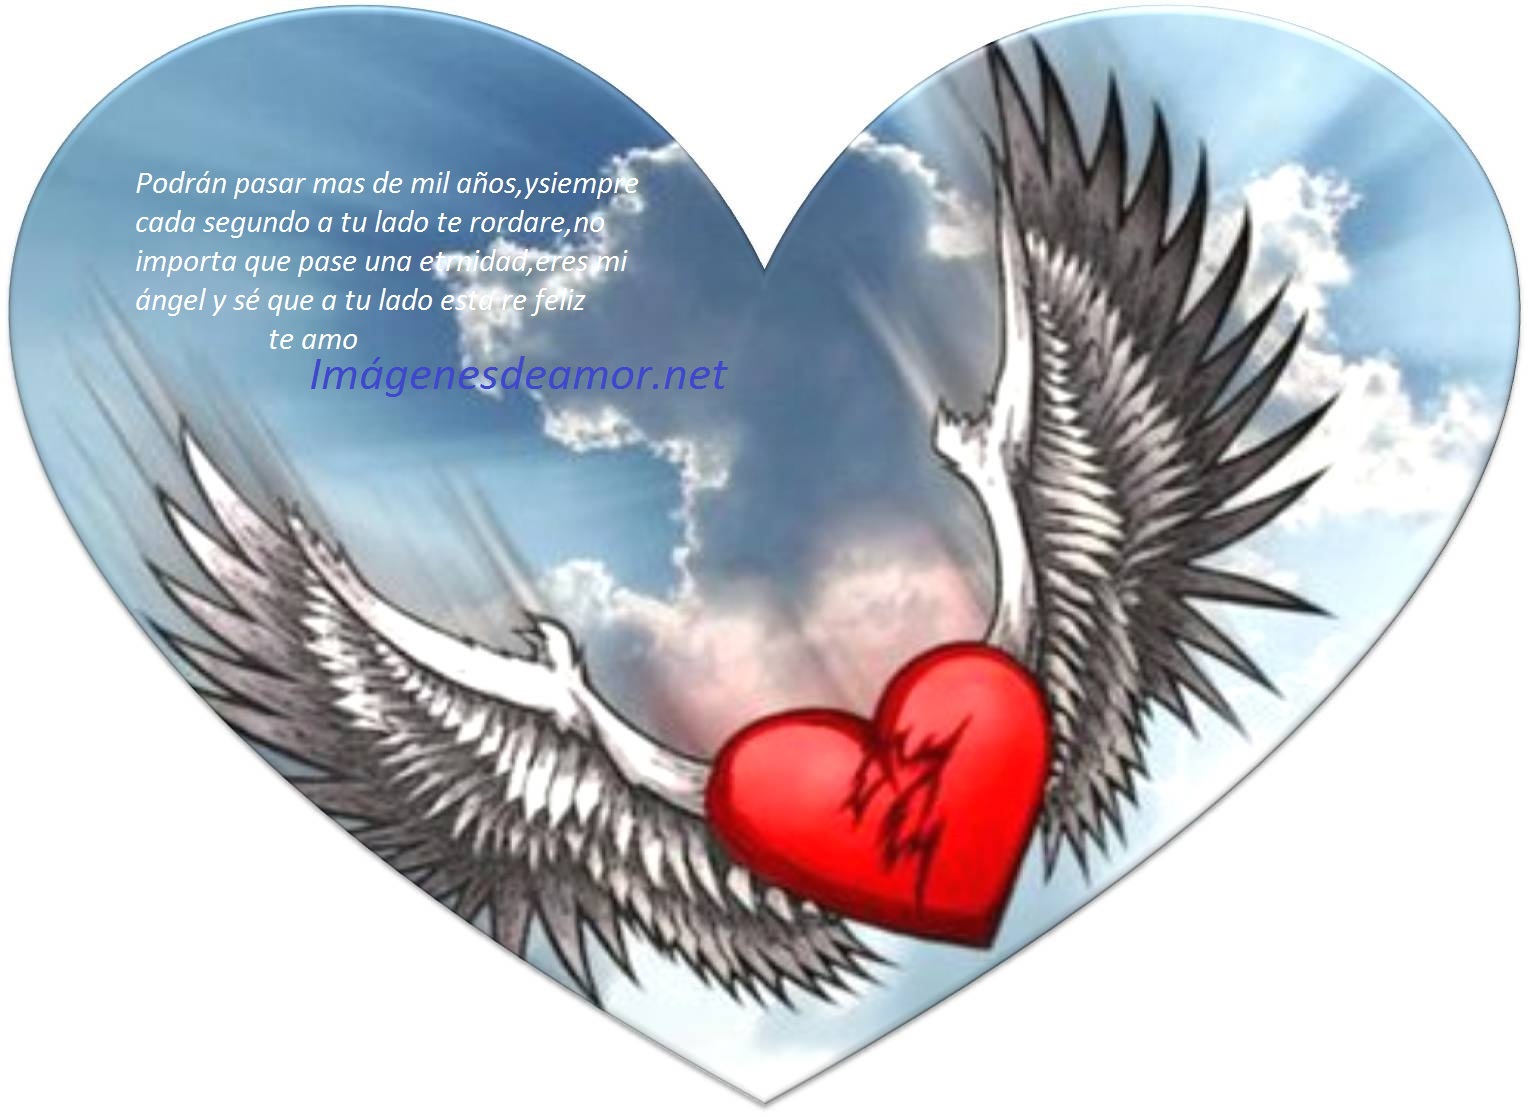 Autorización Instantáneamente Monarca Imágenes de corazones con poemas de amor | Imagenes de amor gratis